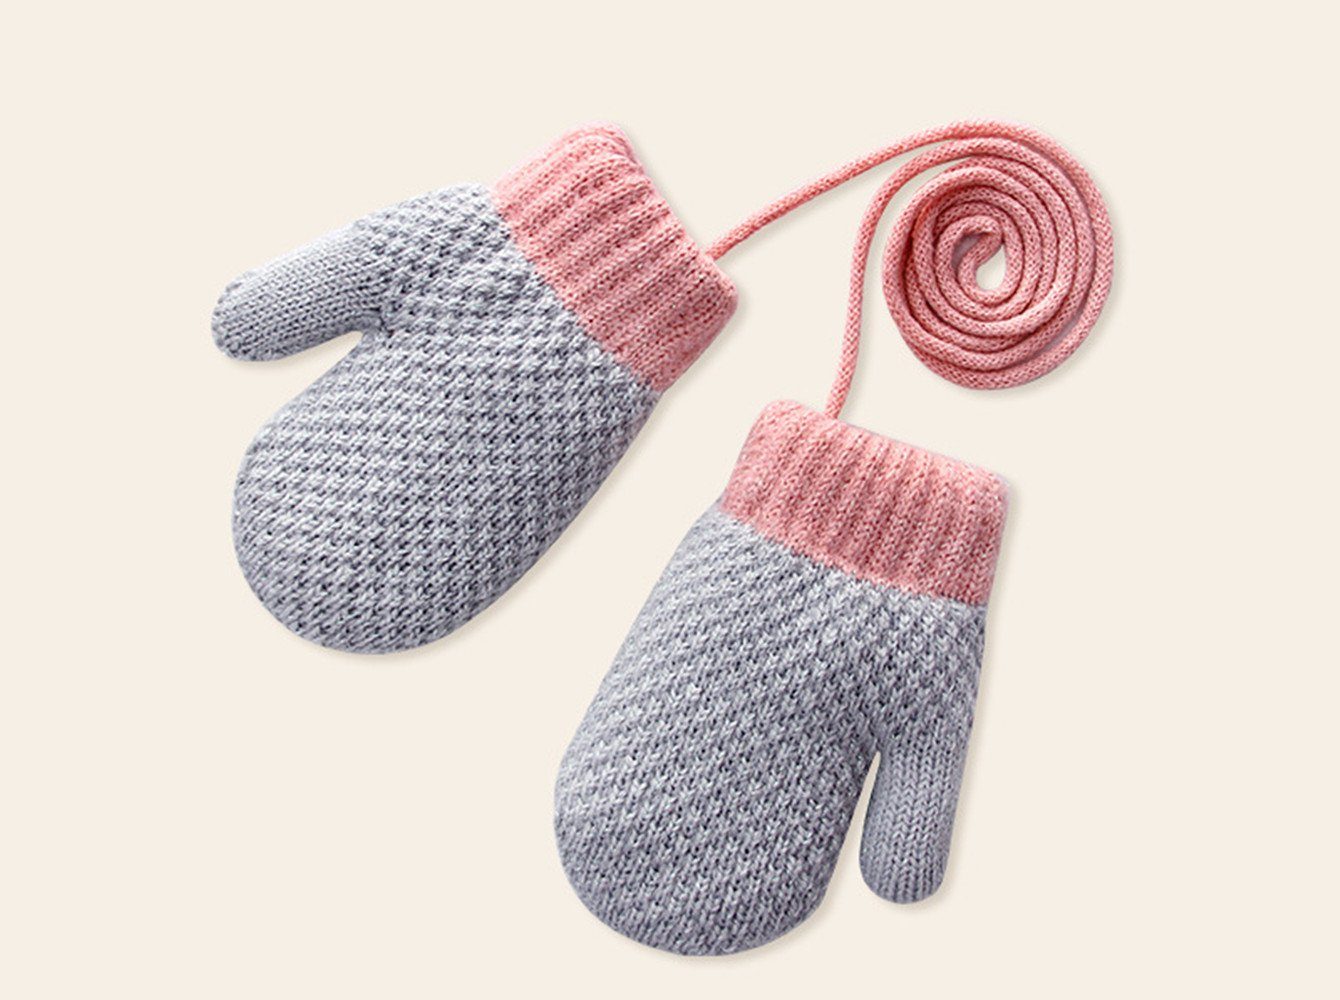 XDeer Fäustlinge Baby Handschuhe, Fäustlinge Kinder Winterhandschuhe Warm Strickhandschuhe mit Schlüsselband für 1-3 Jahre Mädchen Junge gray